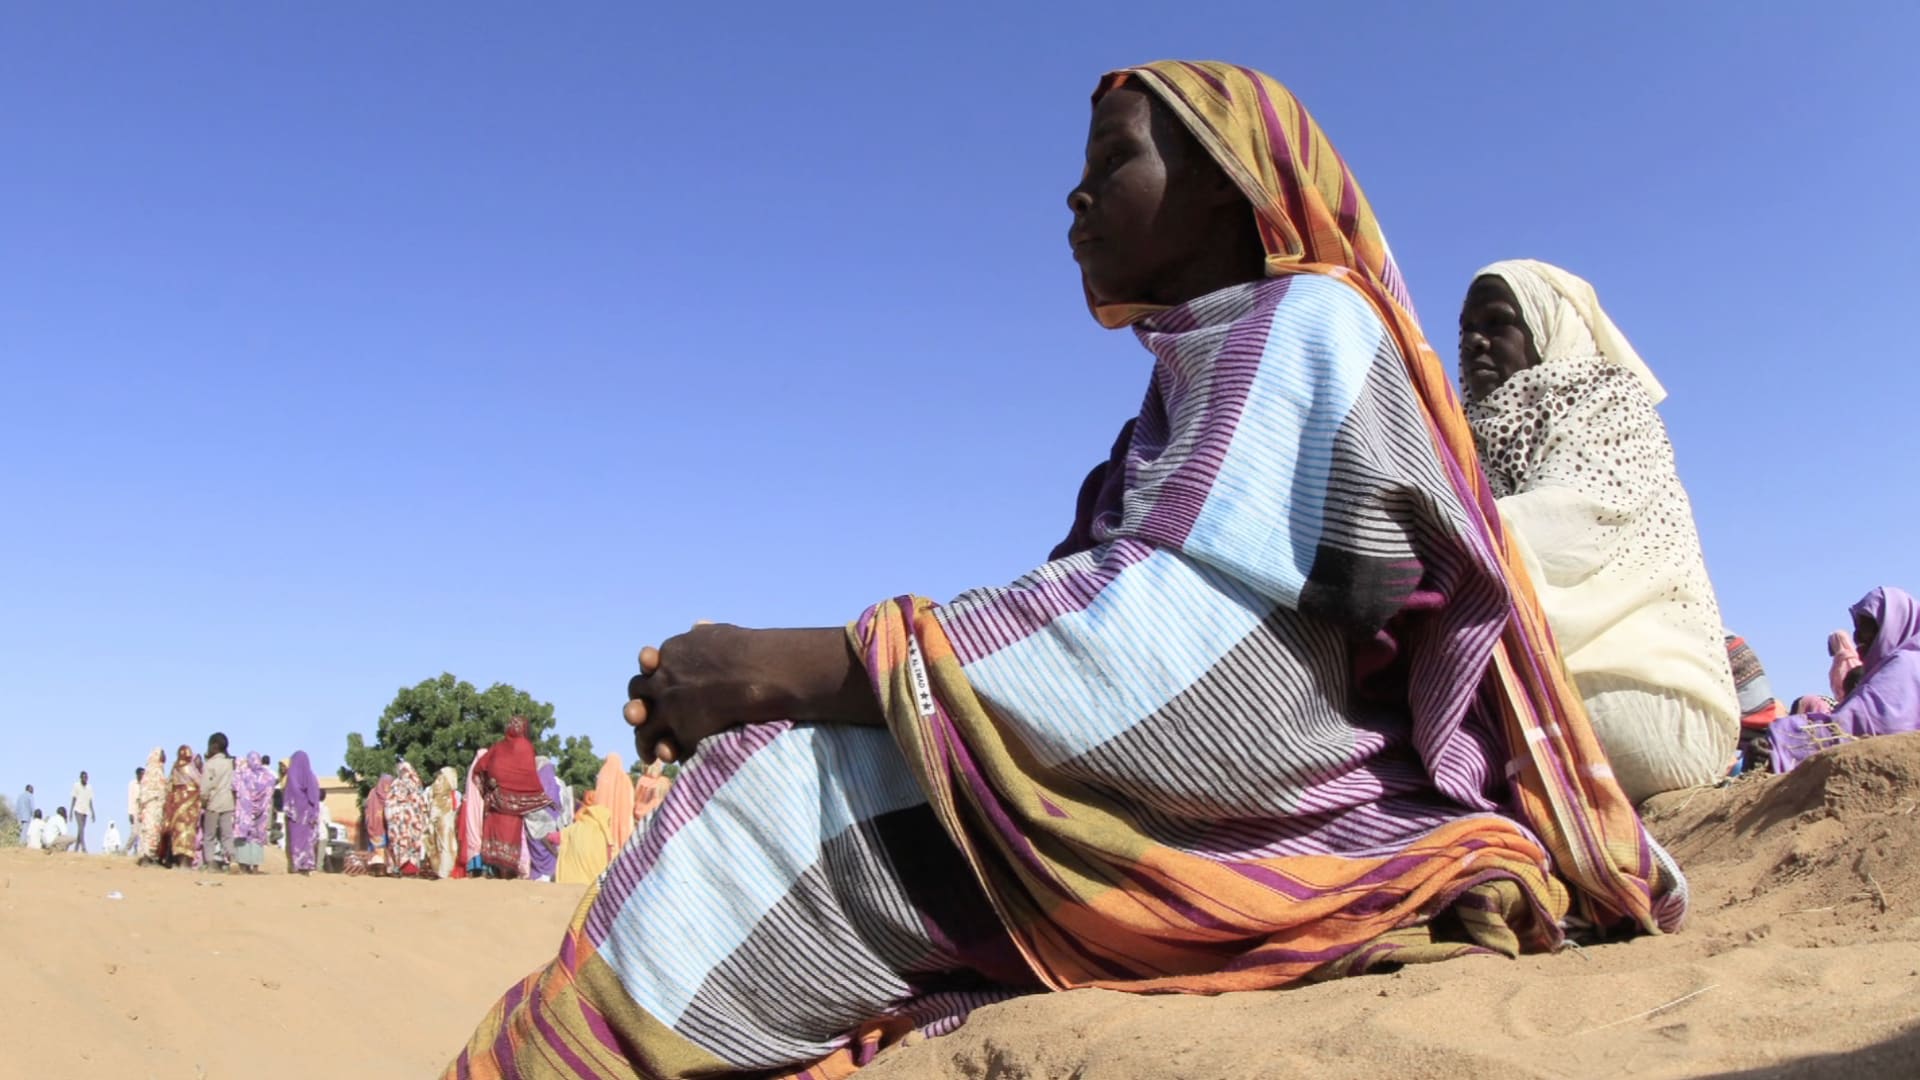 انتهاكات جنسية لقوات الدعم السريع المدعومة إماراتيا ضد السودانيات تدفعهن للإجهاض والانتحار